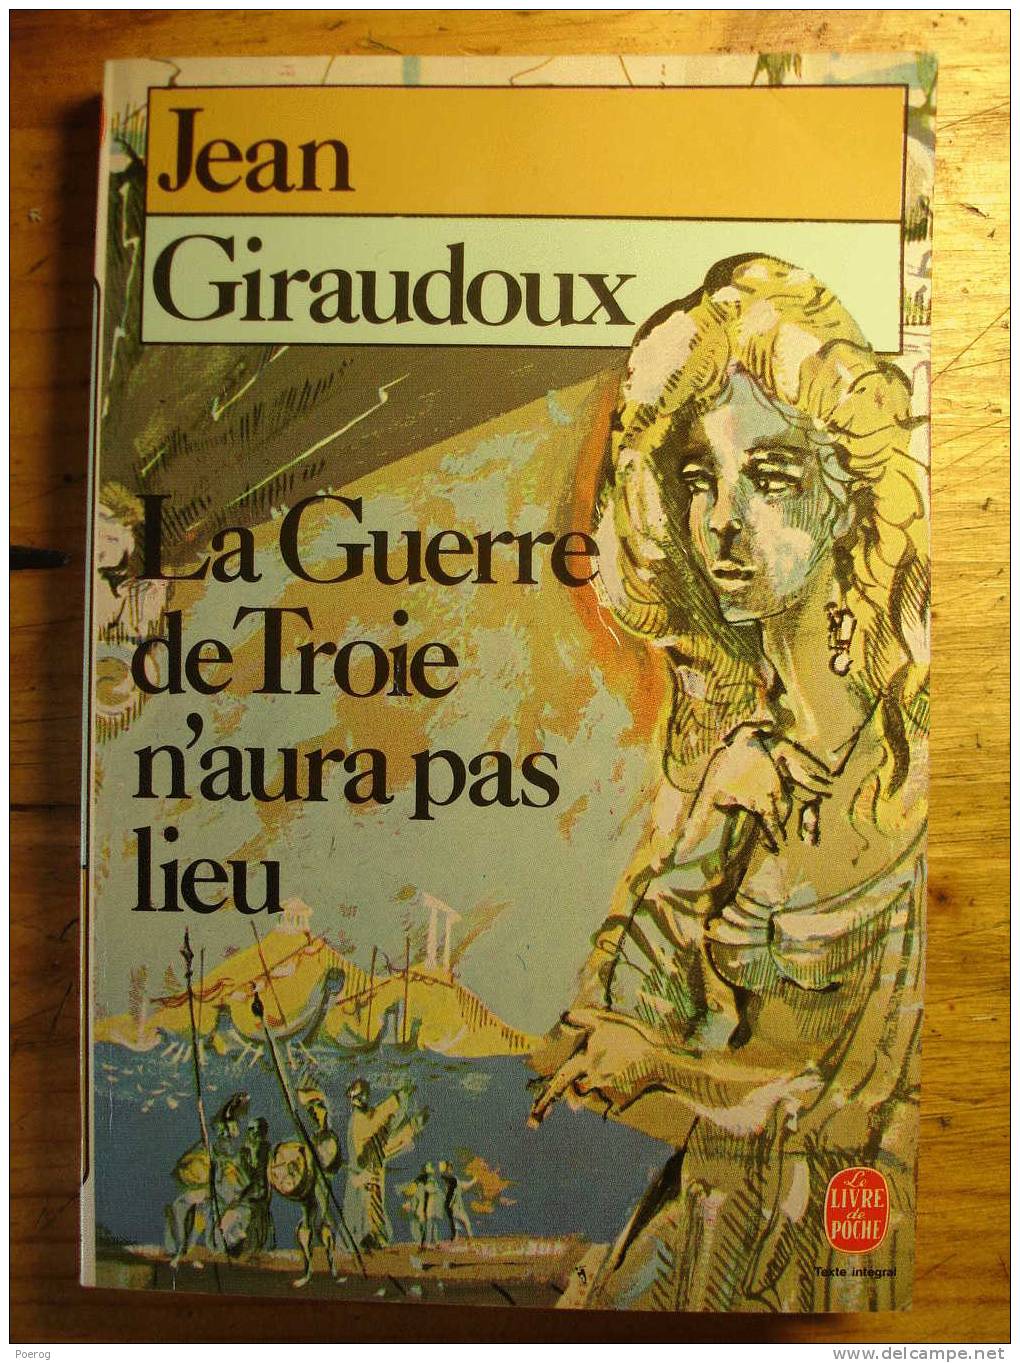 JEAN GIRAUDOUX - LA GUERRE DE TROIE N' AURA PAS LIEU - LE LIVRE DE POCHE N°945 - 1986 - Franse Schrijvers